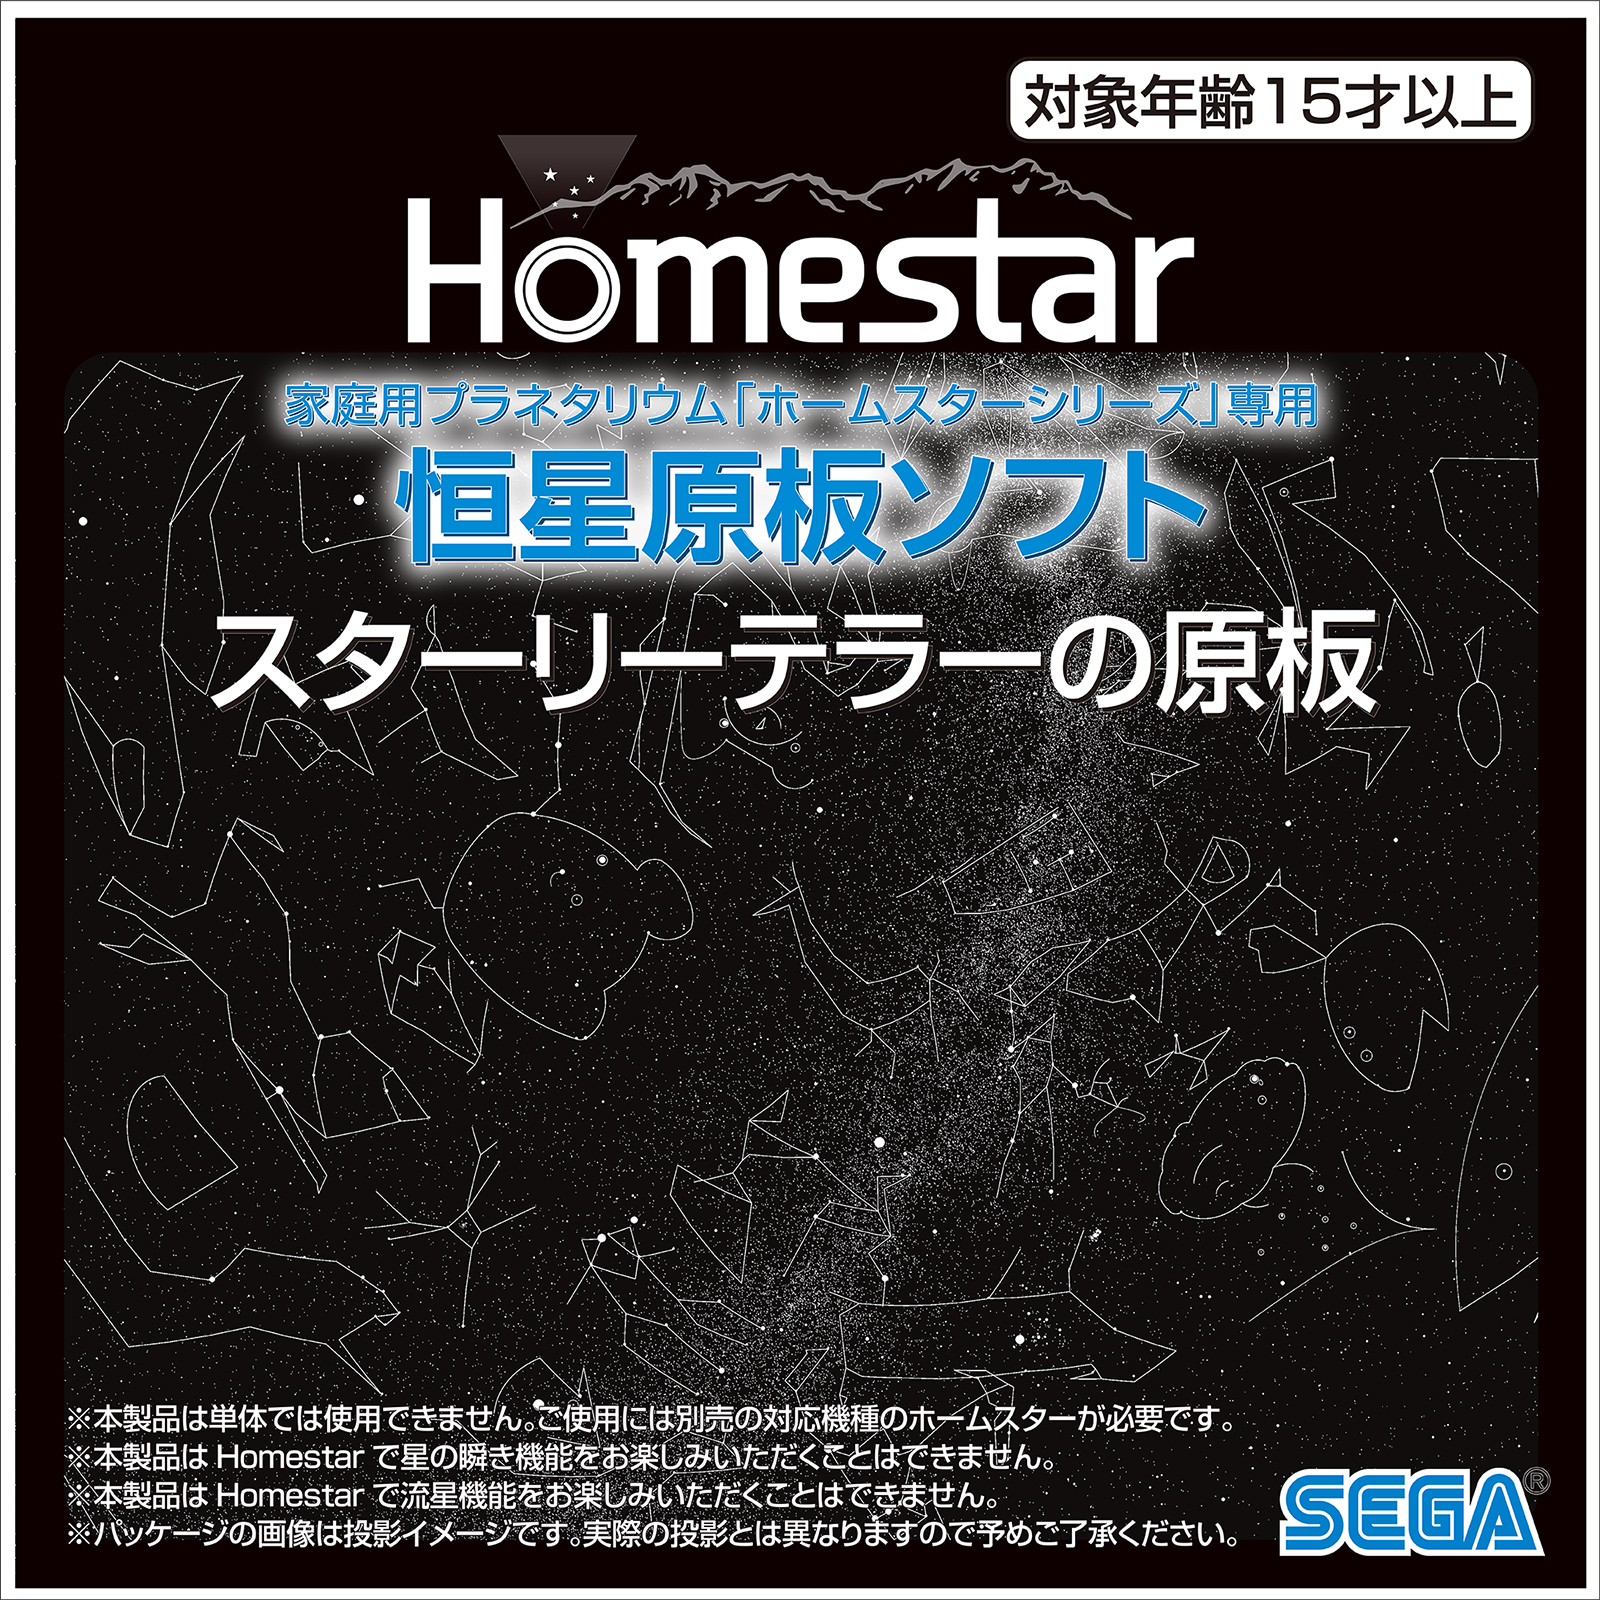 【セガトイズ.com限定】Homestar 限定原板セット ※スターリーテラーの原板 商品画像10